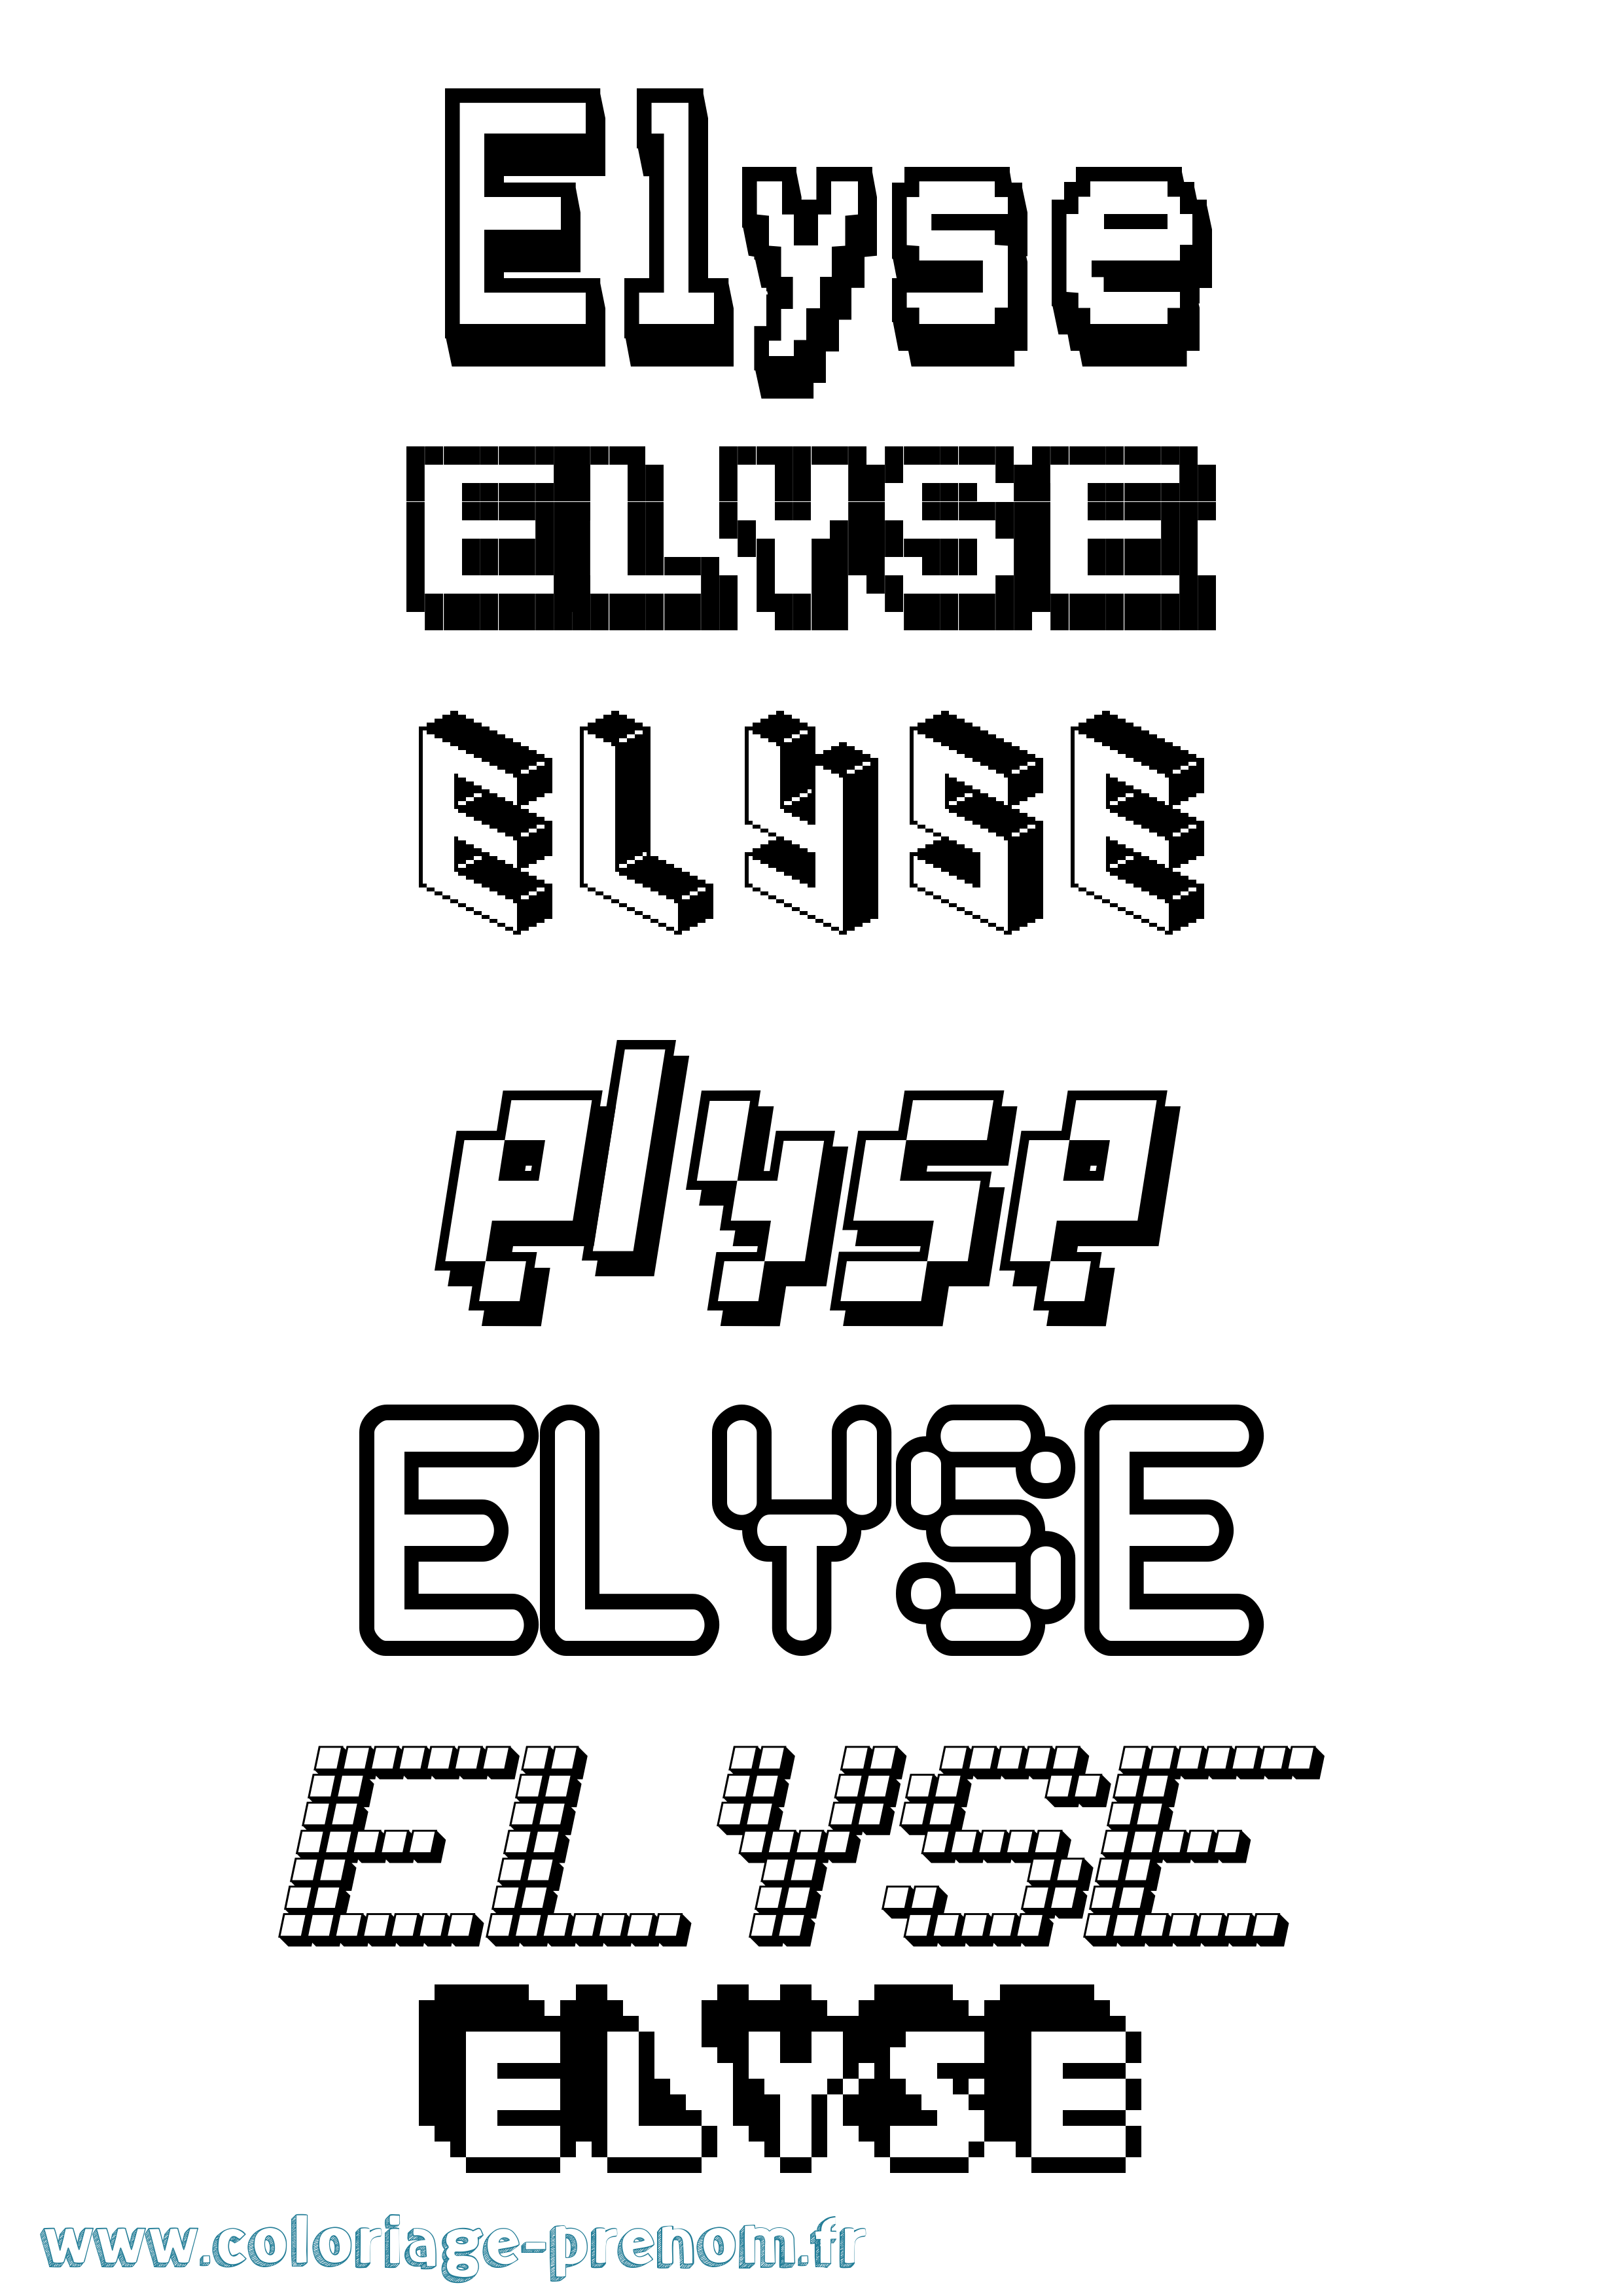 Coloriage prénom Elyse Pixel